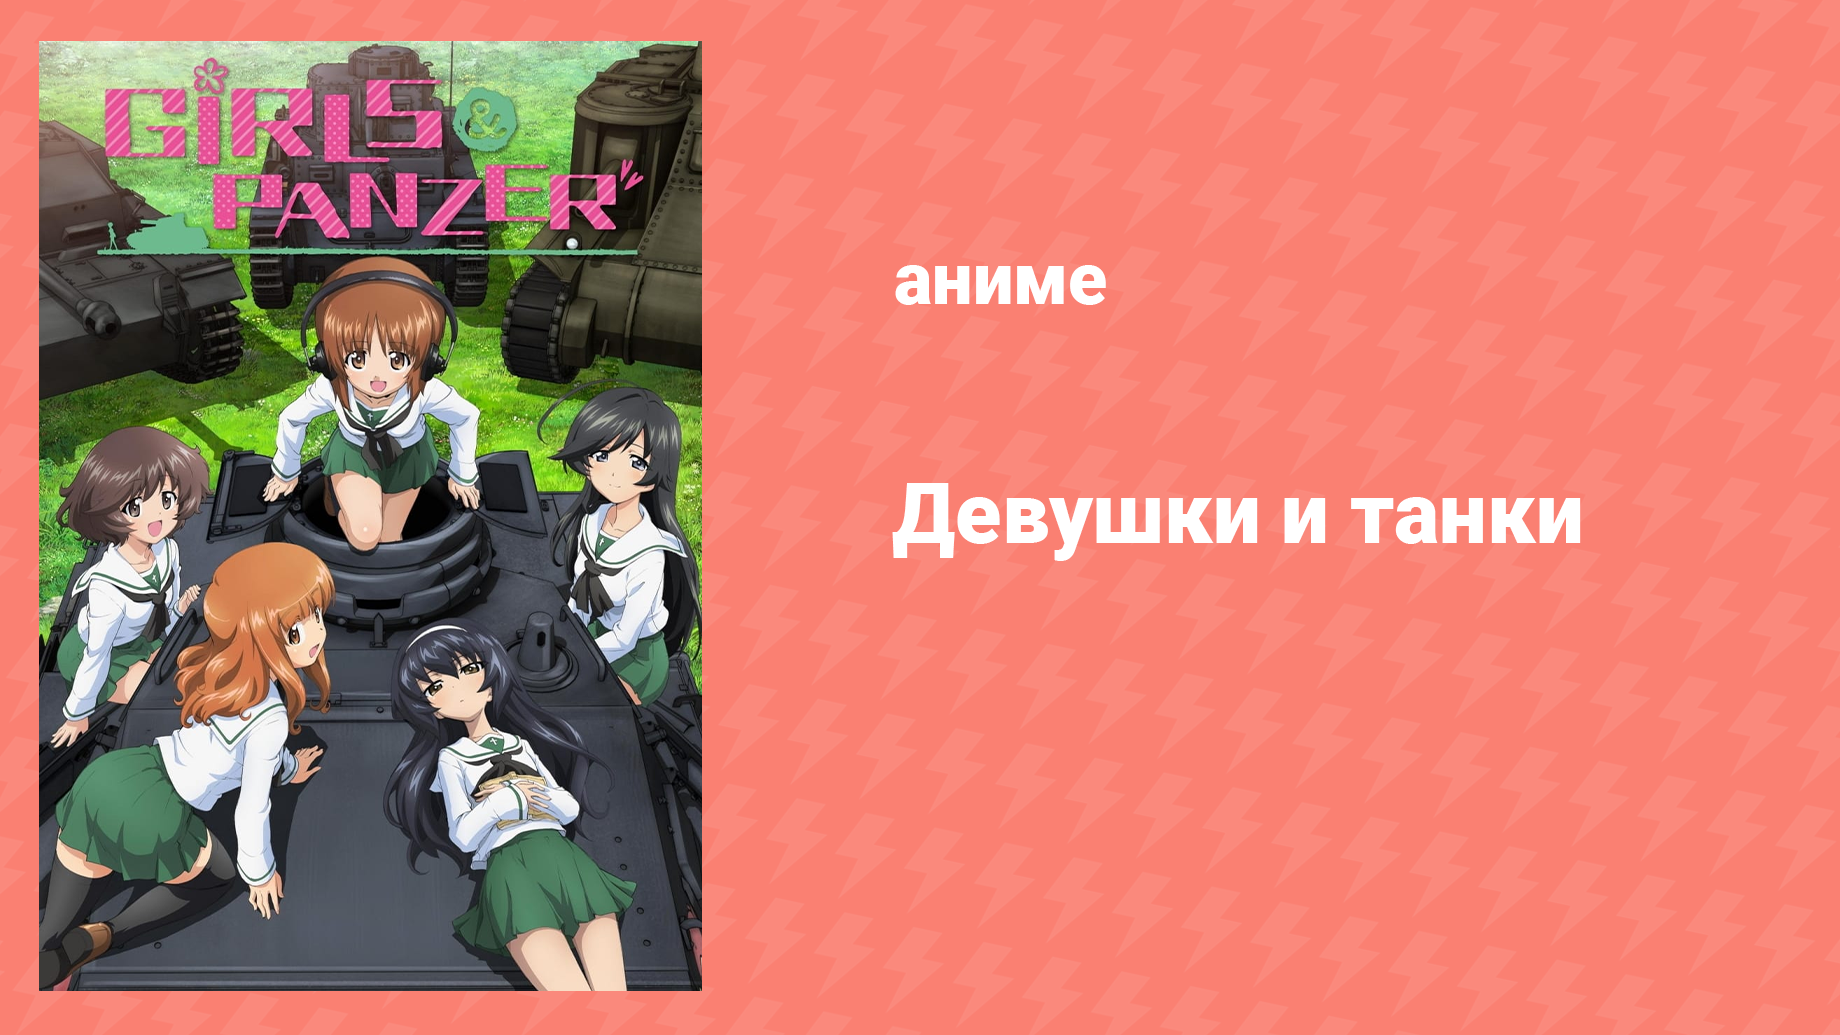 Девушки и танки 6 серия «Первая битва достигнет кульминации!» (аниме-сериал, 2012)